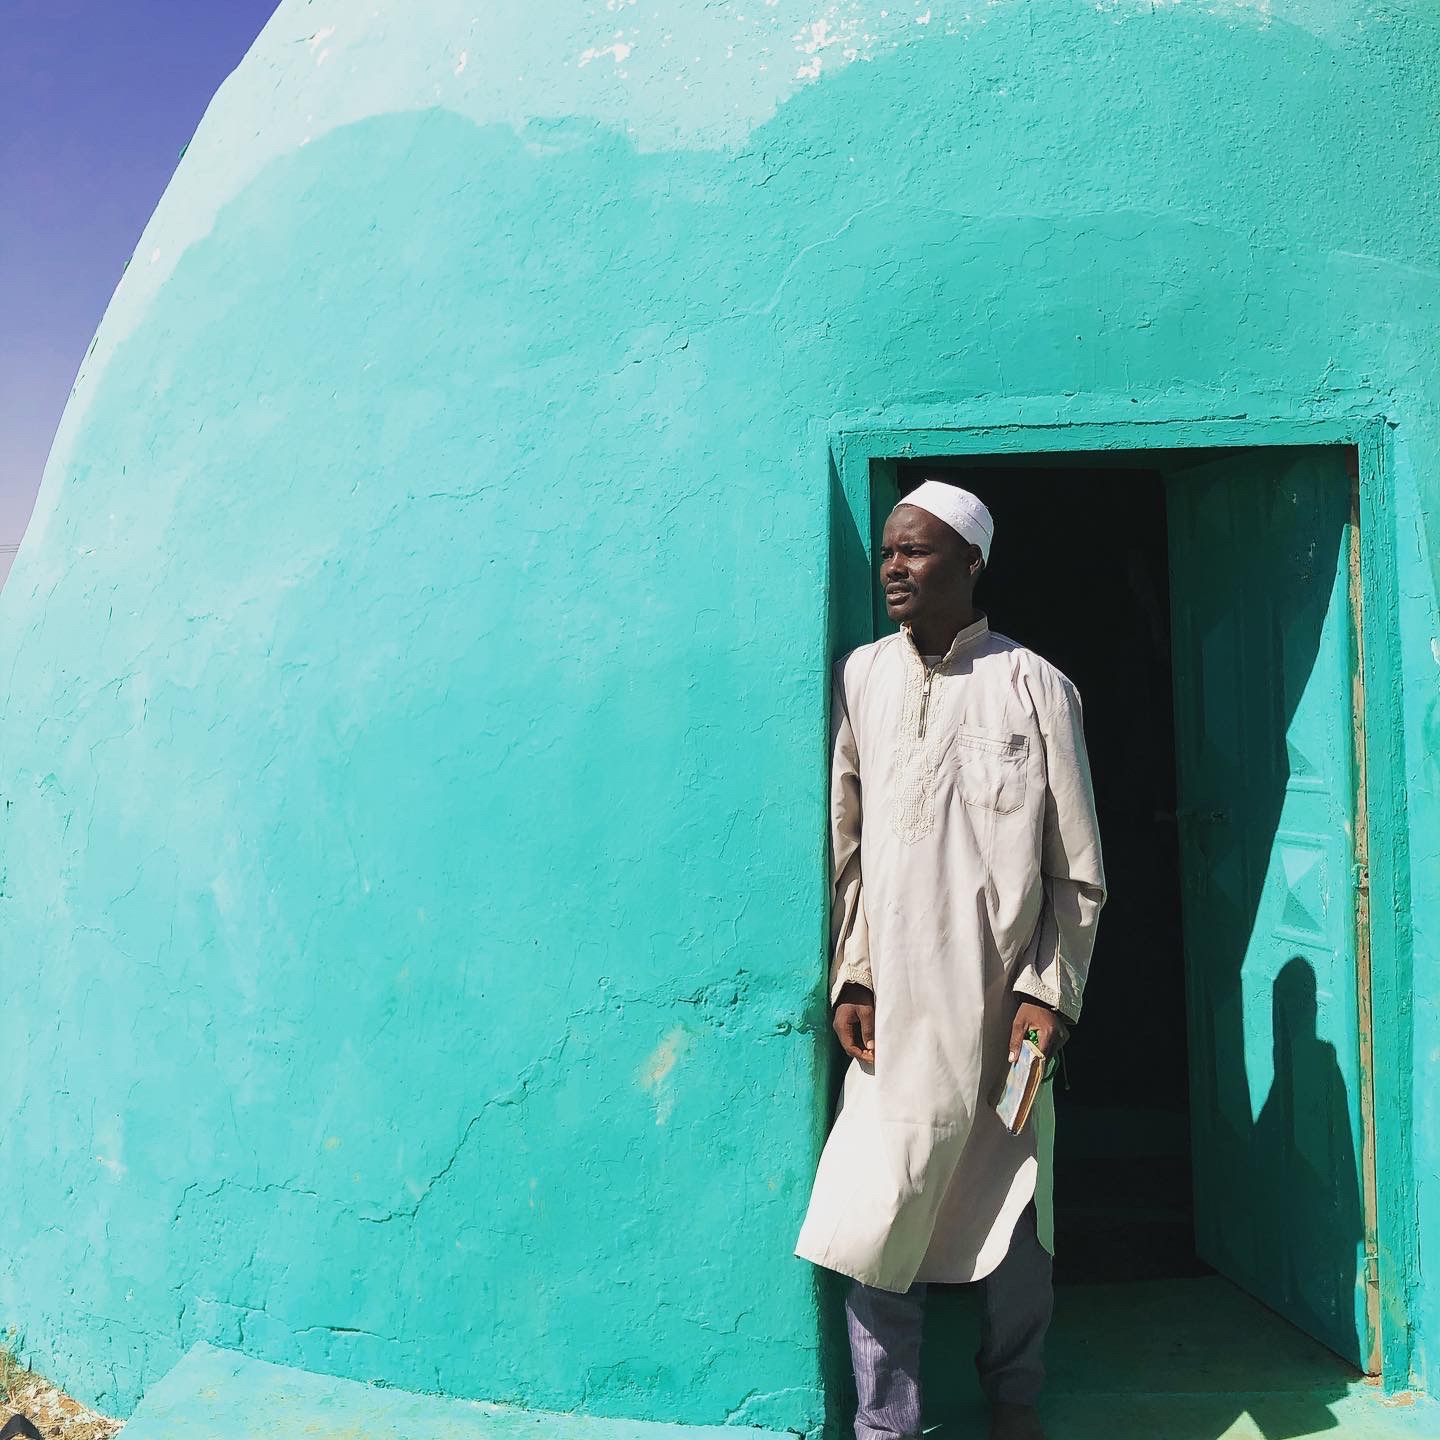 Zdjęcie wykonane jest w miejscowości Soba w Sudanie Południowym. Autor zdjęć: Maciej Kurcz Zdjęcie jest piękne kolorystycznie. Dominują 3 kolory biały, lazurowy i błękitny. Na zdjęciu widać po lewej stronie u góry skrawek błękitnego nieba. Większą część zdjęcia wypełnia kopulasty grobowiec - grób świątobliwego mędrca. Budowla ma kształt owalu po prawej stronie znajdują się prostokątne drzwi do świątyni, w których stoi mężczyzna. Mężczyzna jest derwiszem opiekującym się tą światynią, który za opłtą odmawia Koran za wiernych. Mężczyzna ma czarny kolor skóry jest ubrany w białą, długą, prostą szatę zapinaną pod szyję na 3 guziczki. Na głowie ma białą czapeczkę - kufi.